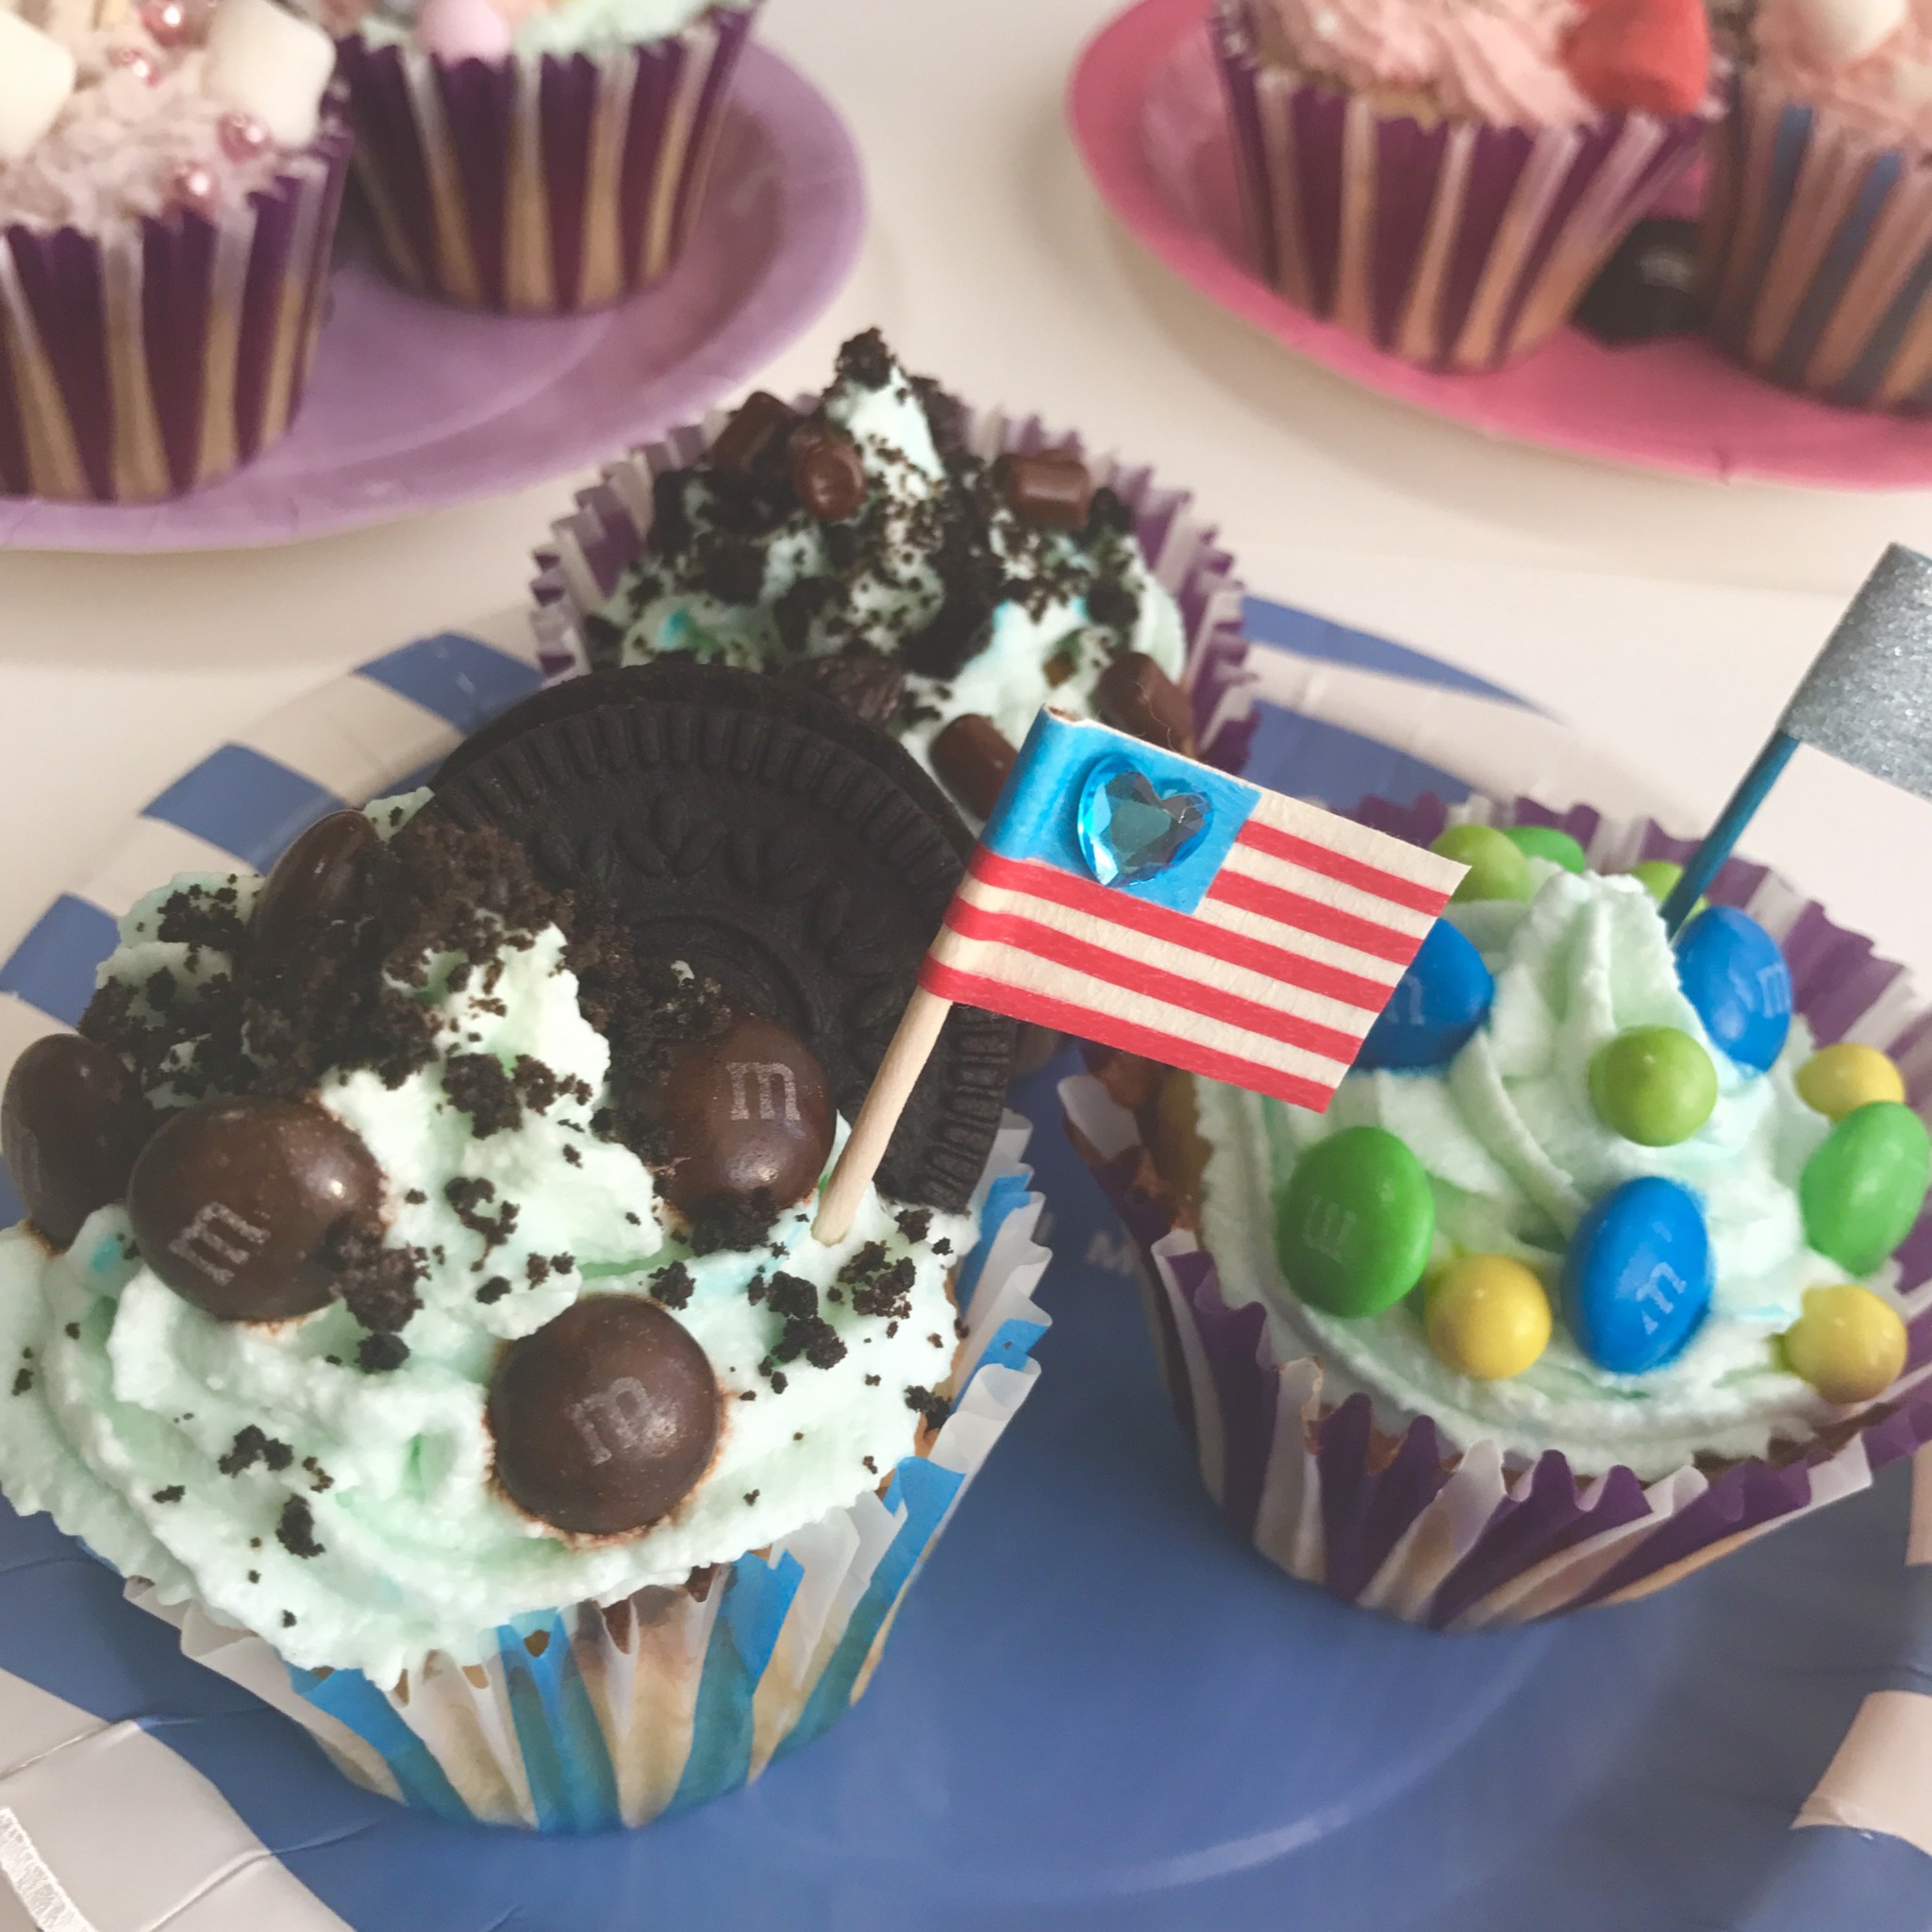 アメリカ風 簡単かわいいカップケーキのデコレーションアイデア Lafary